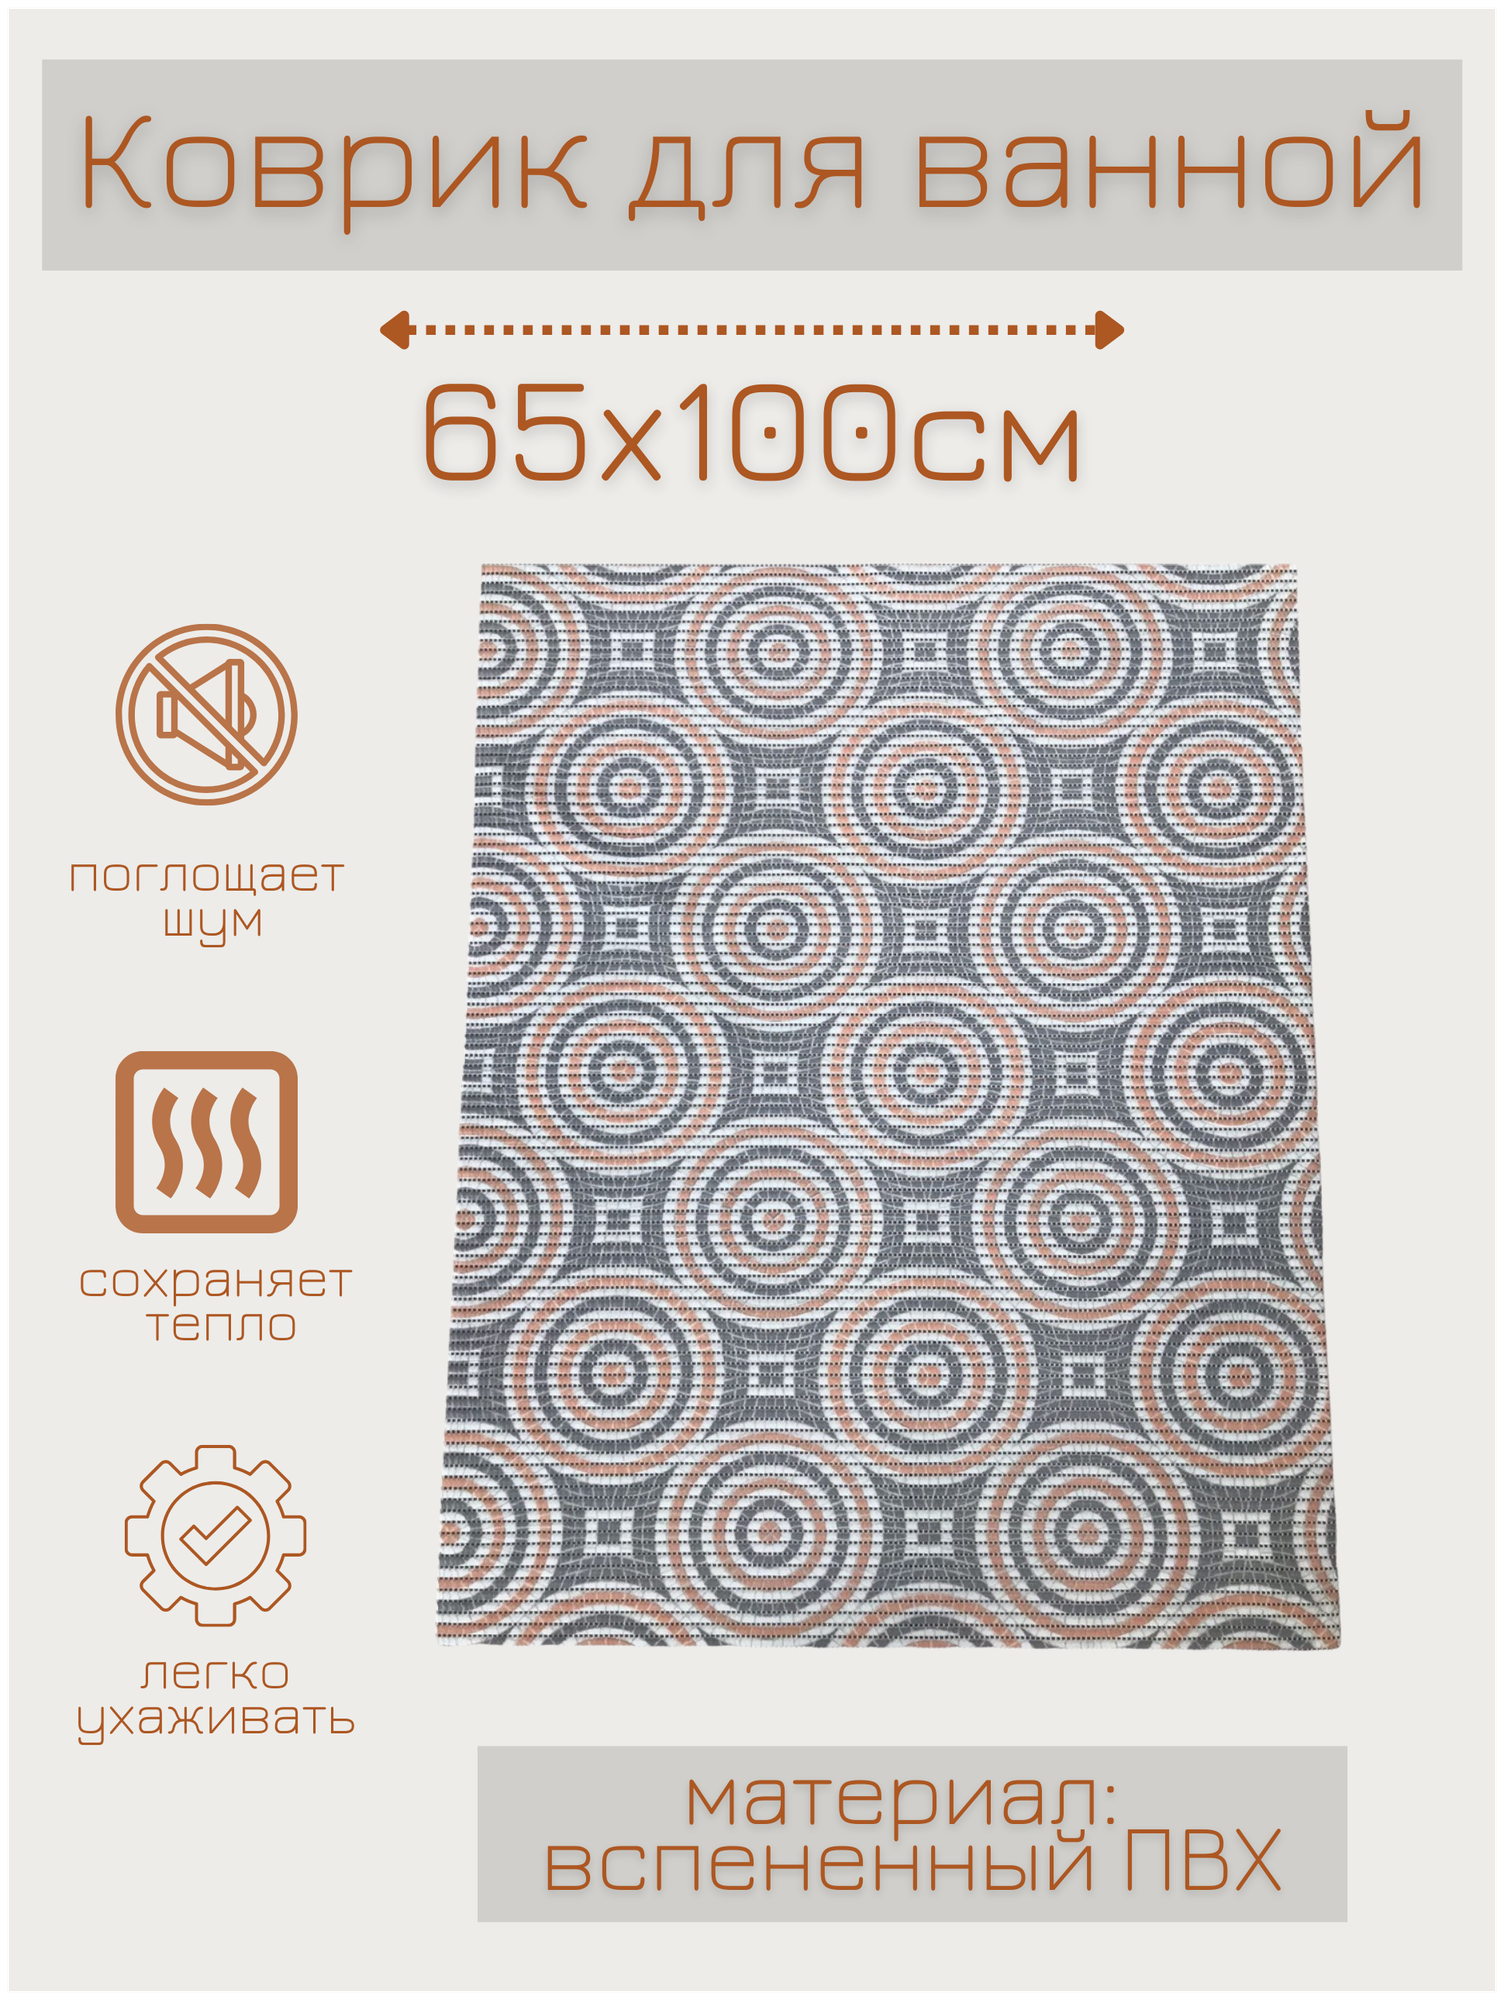 Коврик для ванной комнаты из вспененного поливинилхлорида (ПВХ) 65x100 см, серый/белый/бежевый/оранжевый, с рисунком